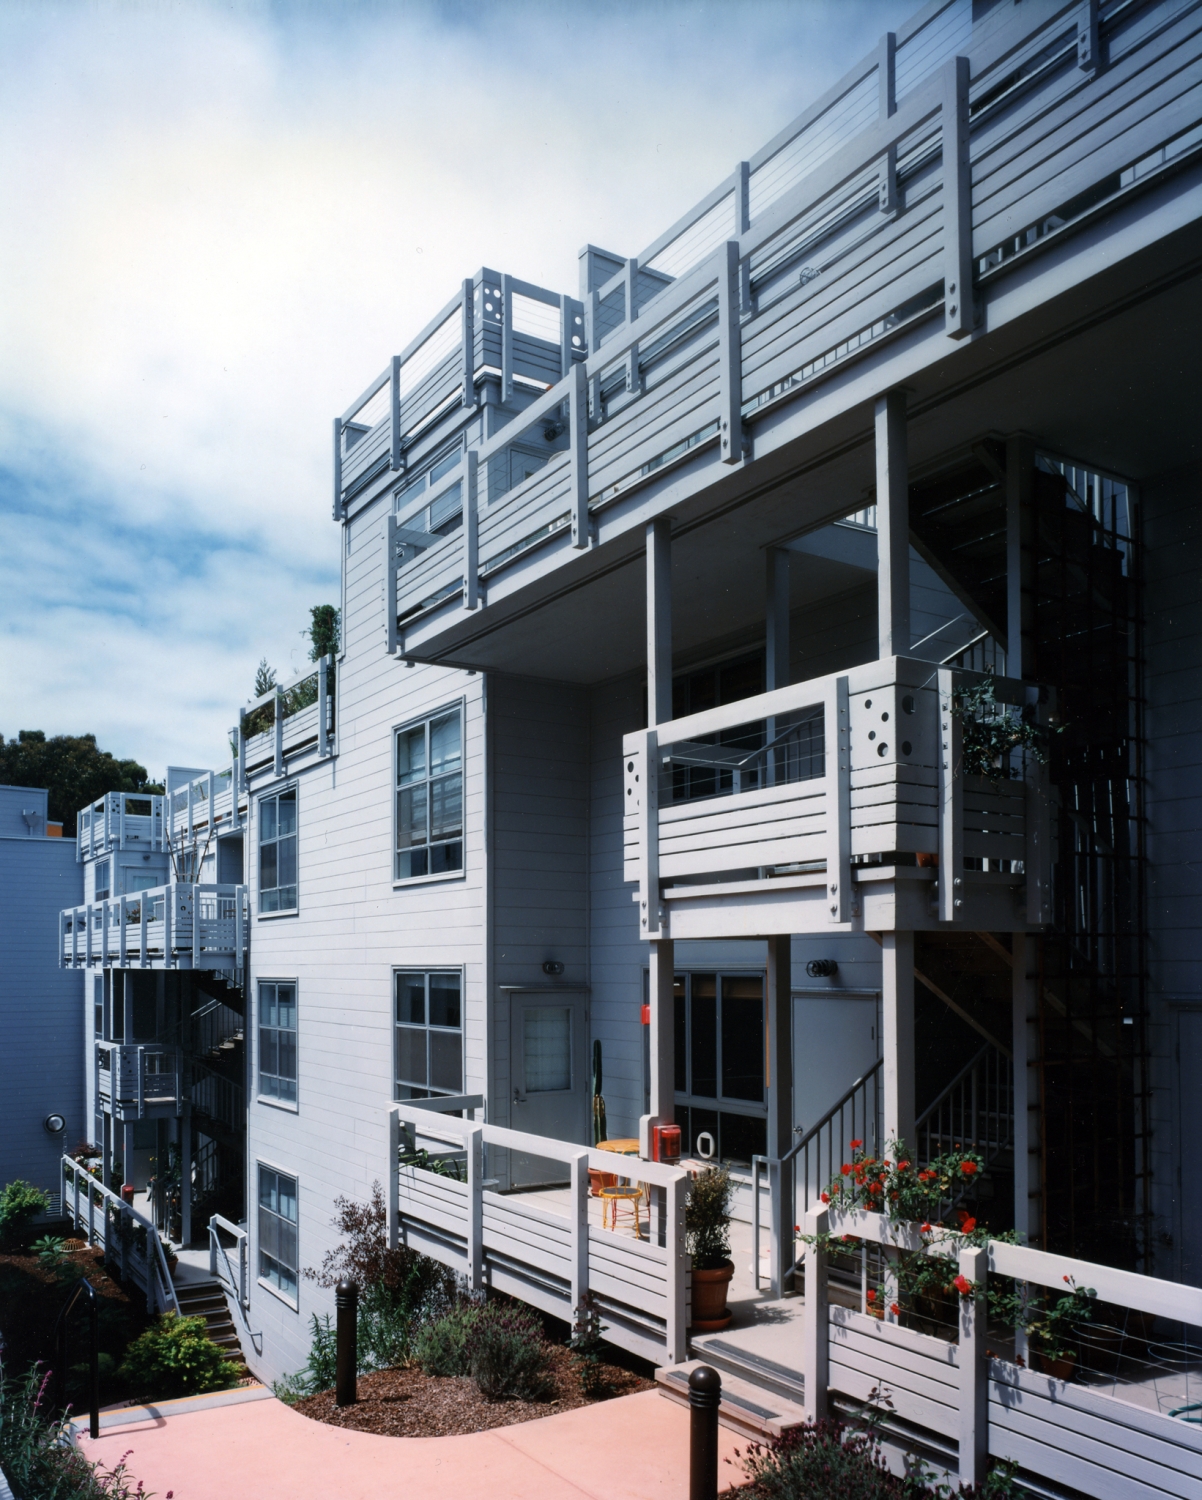 Balconies at 18th & Arkansas/g2 Lofts in San Francisco.